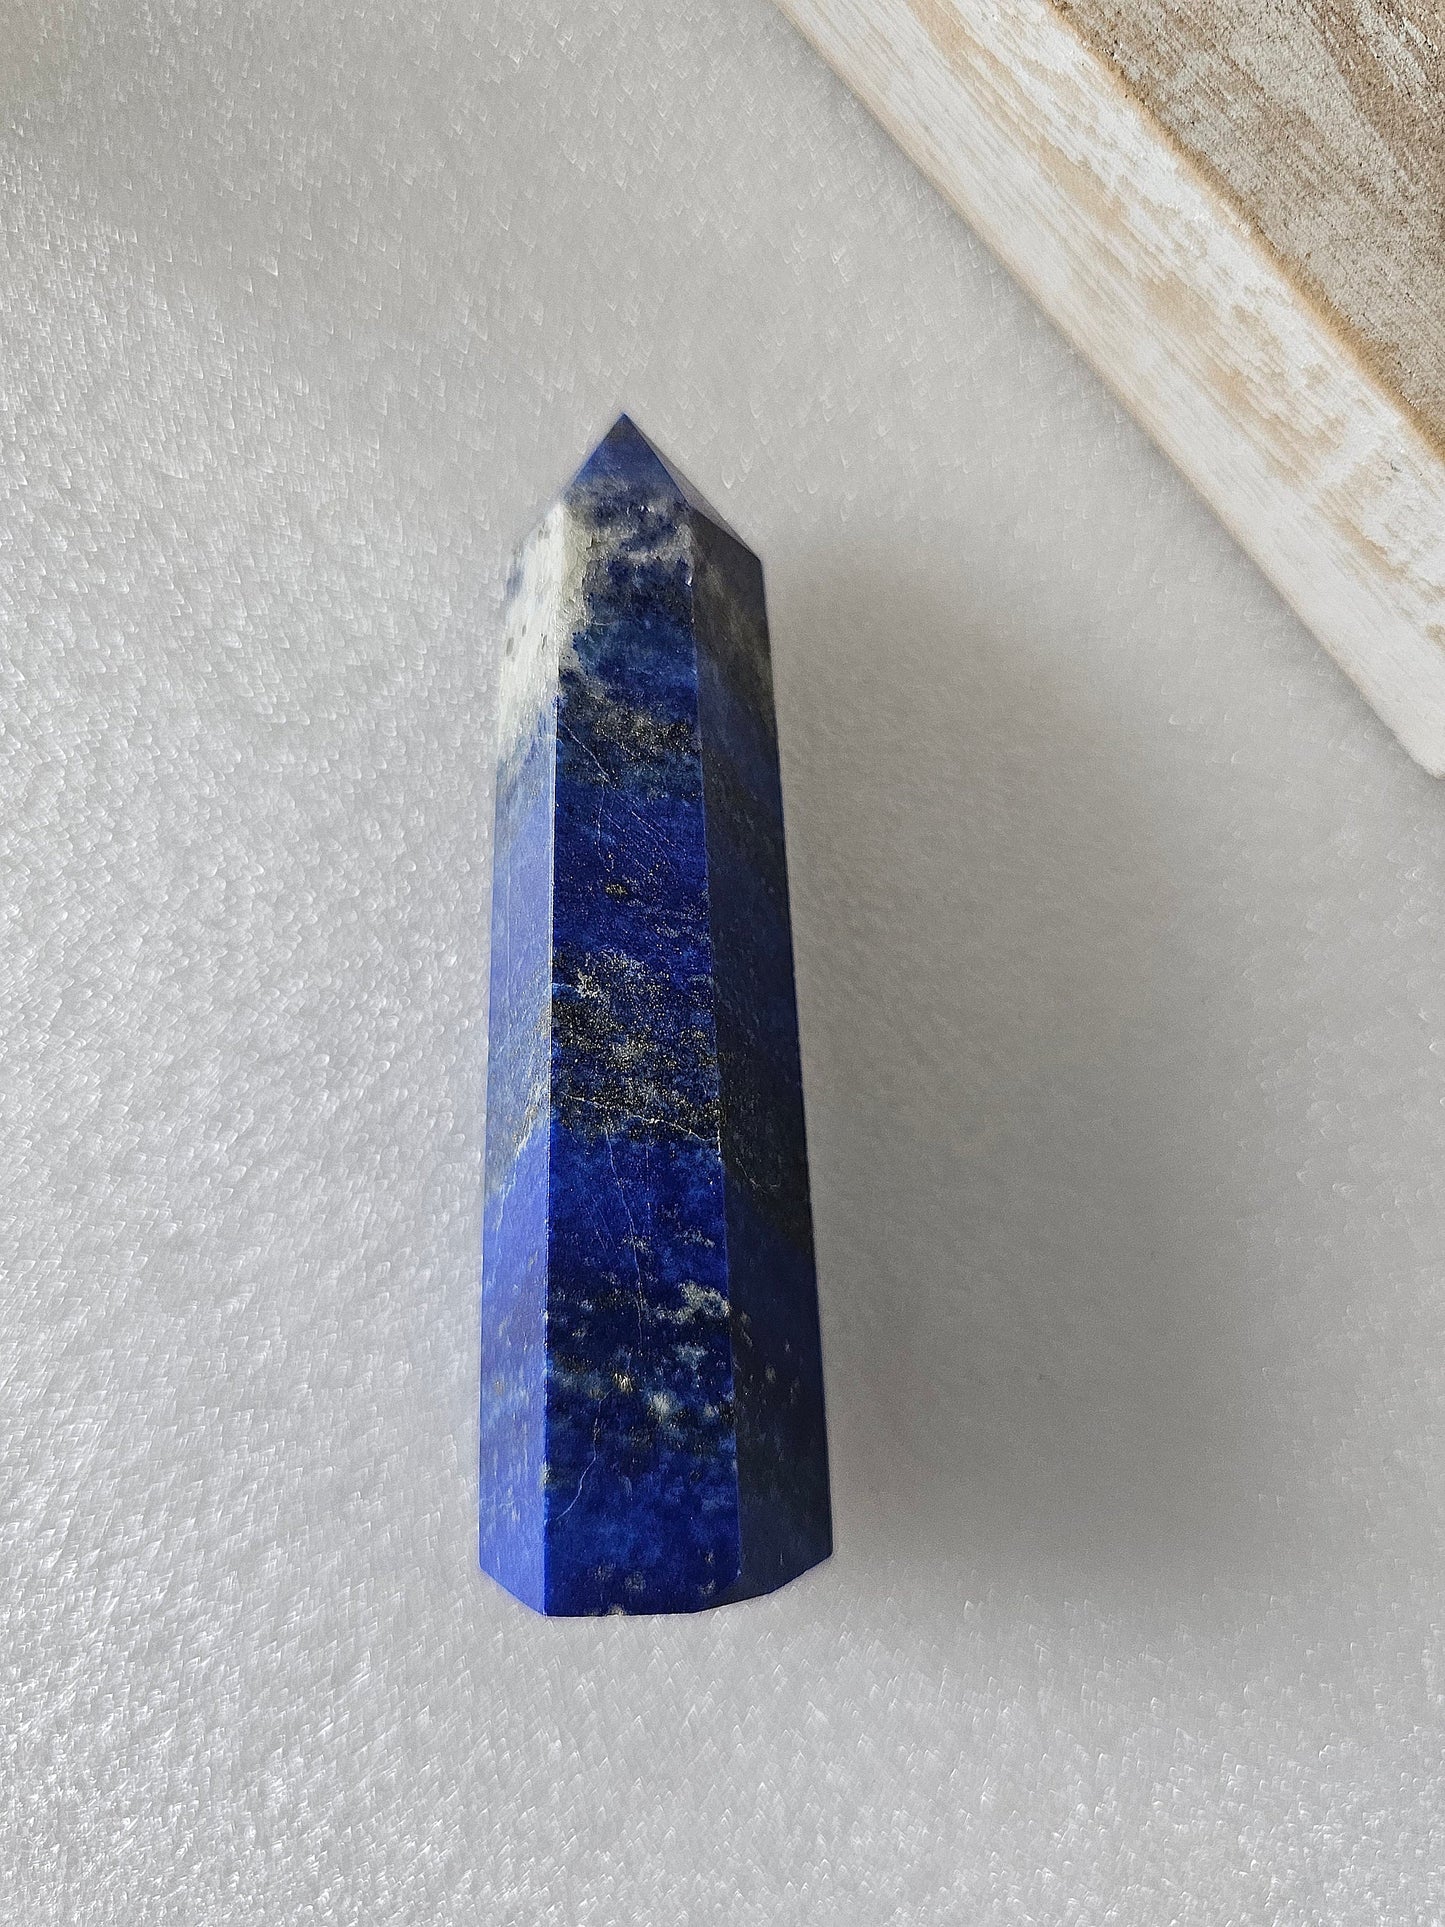 Lapis Lazuli Crystal Tower / Generator